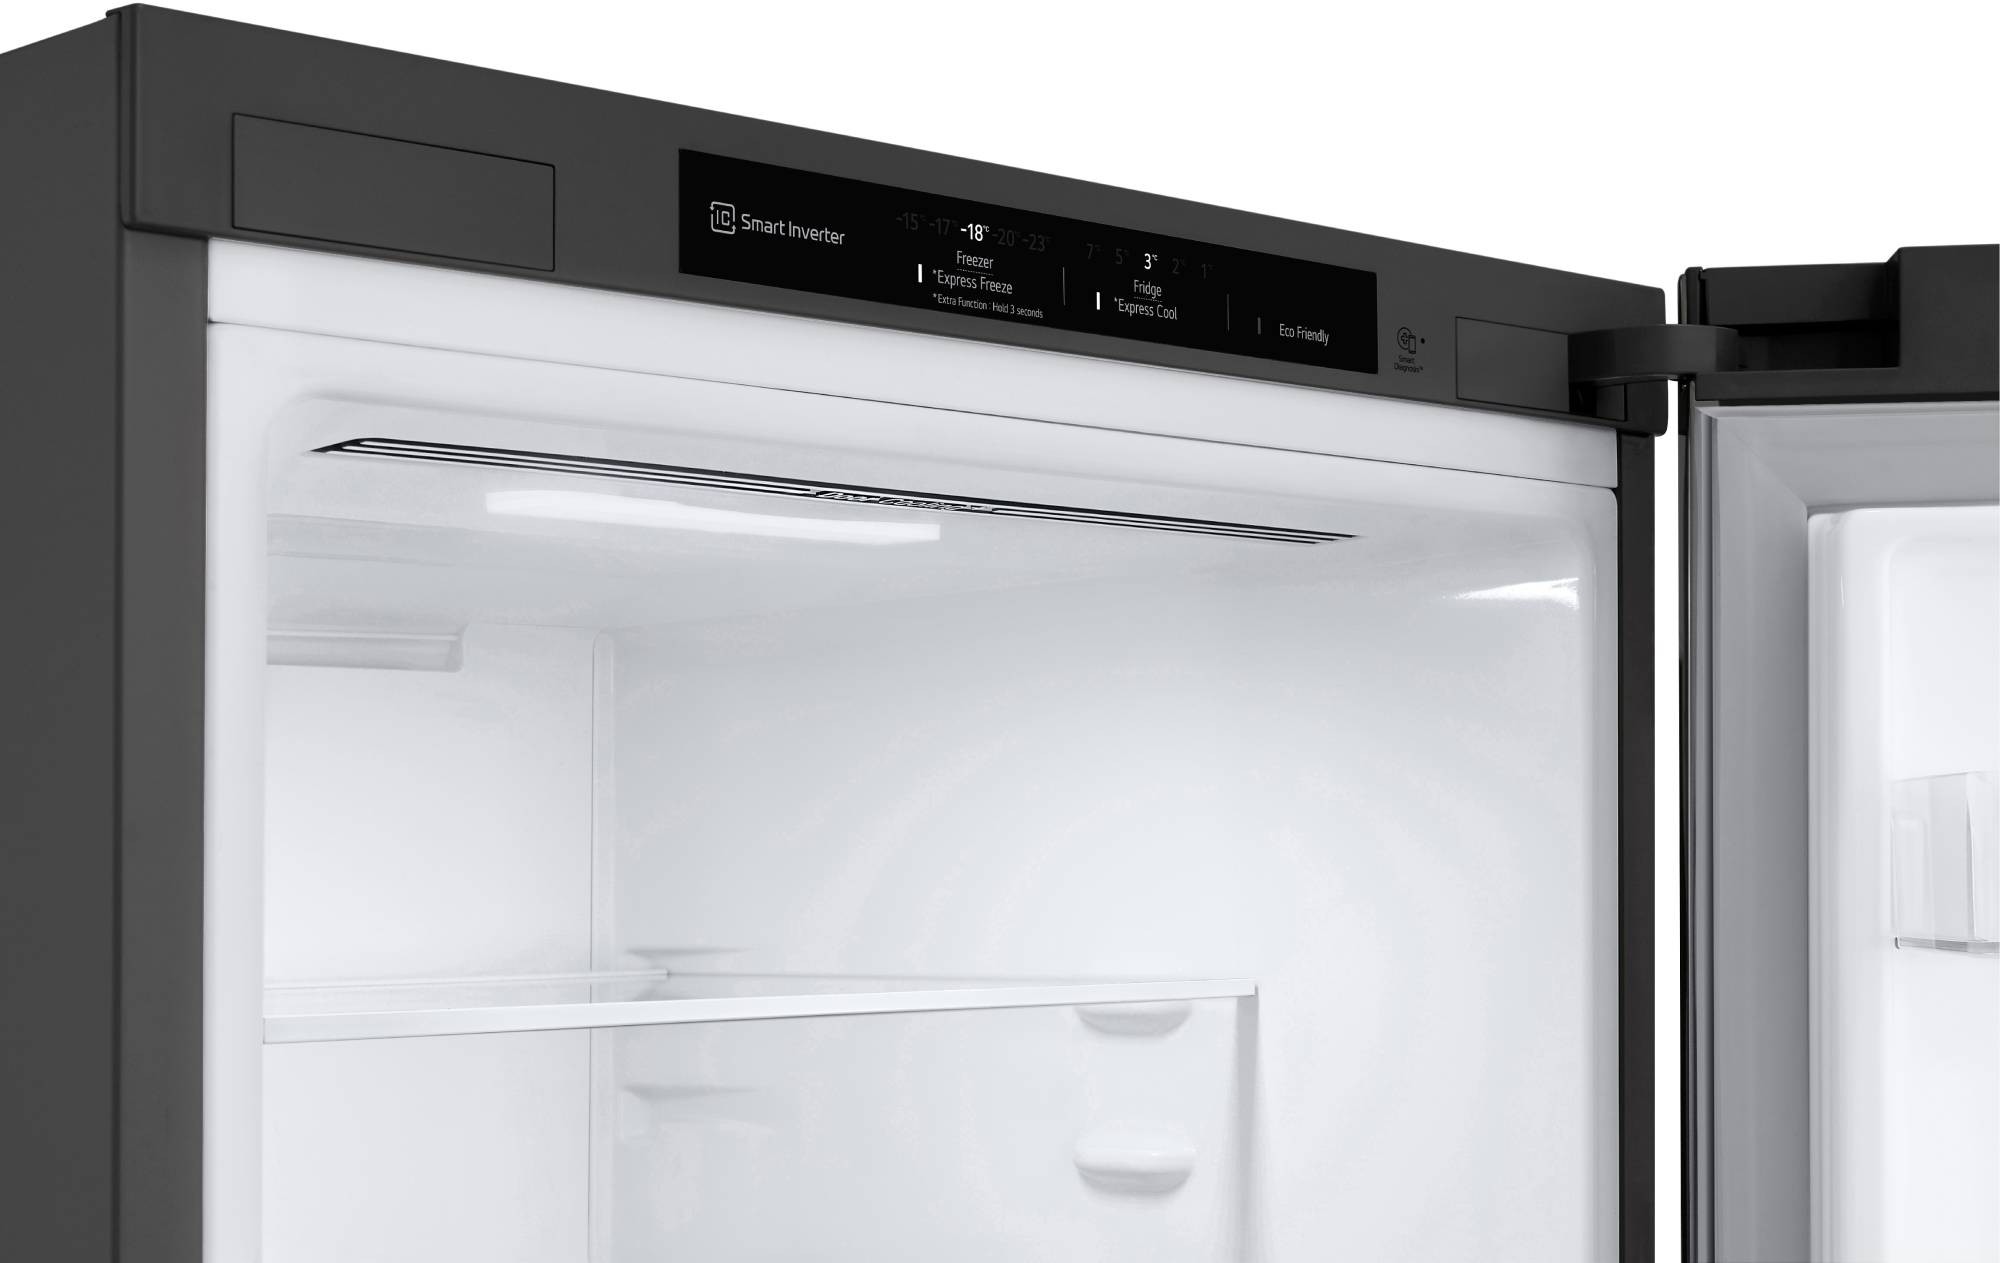 LG Réfrigérateur congélateur bas Froid ventilé Door Cooling+ 384L Inox - GBP62PZNCN1